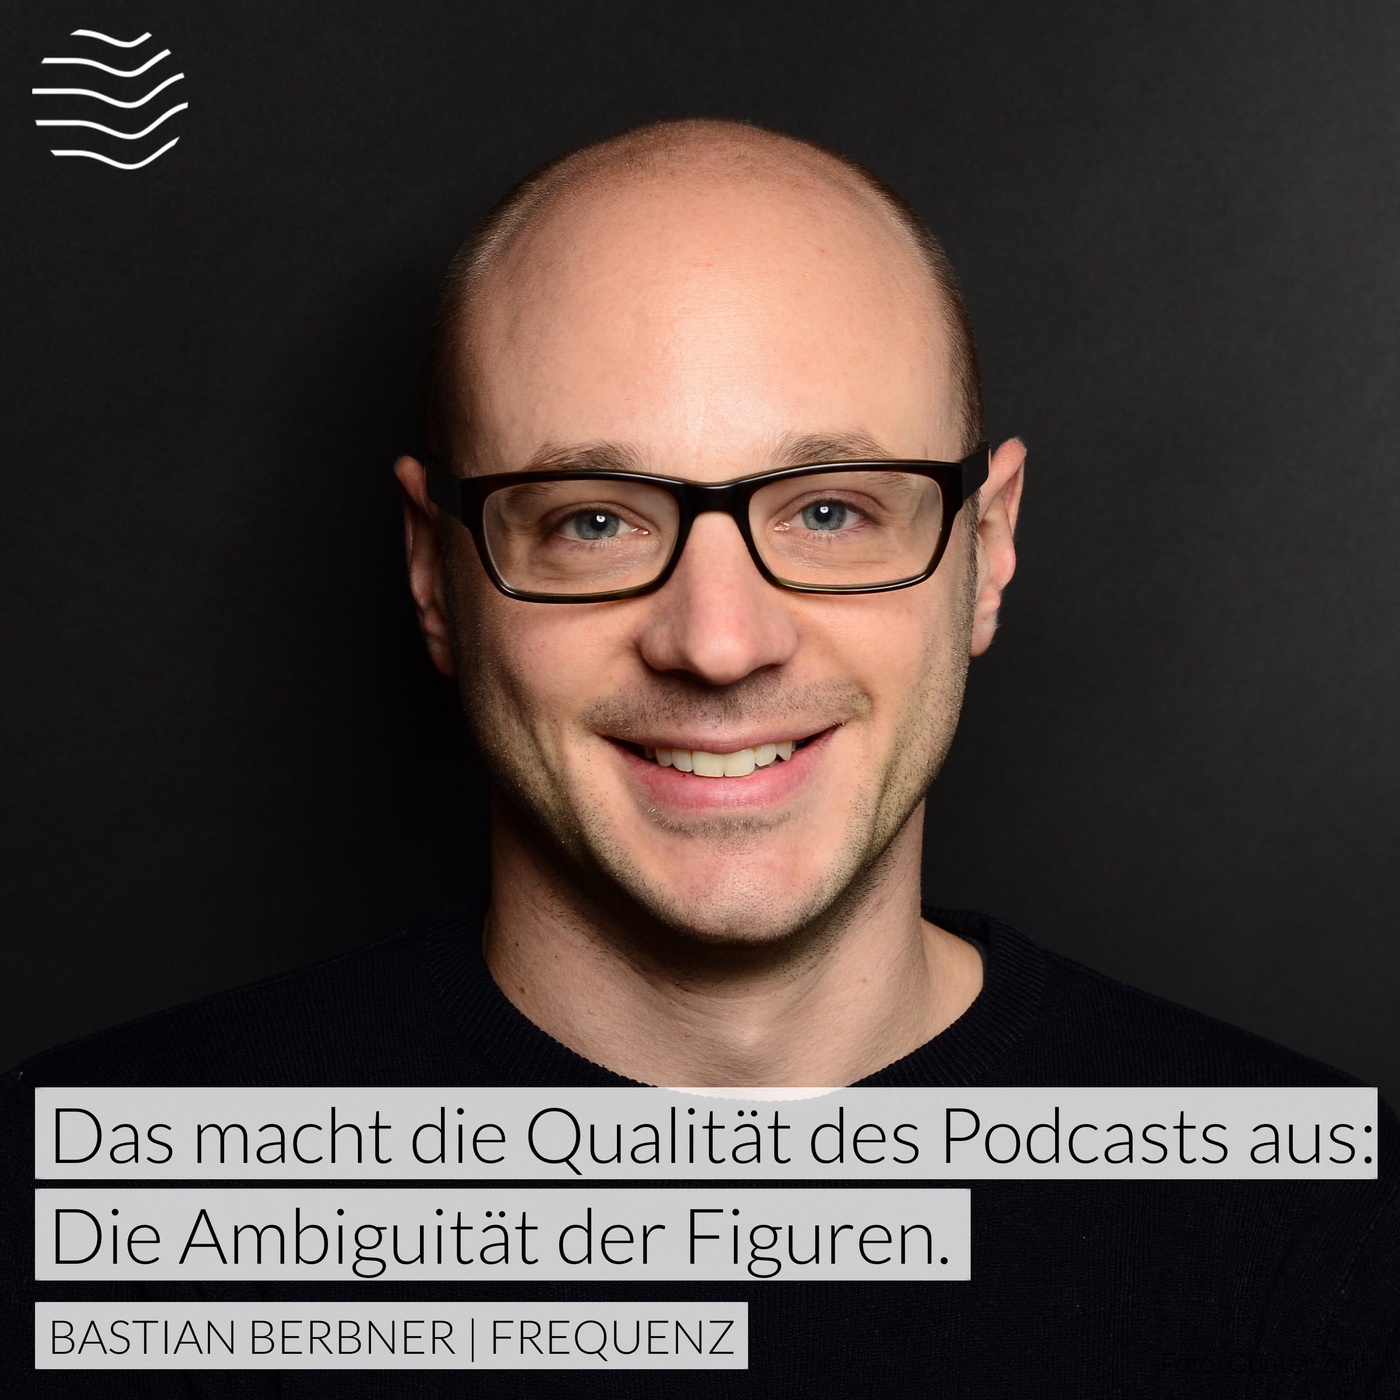 Hinter den Kulissen von “Slahi” (Podcast-Autor Bastian Berbner im Interview)